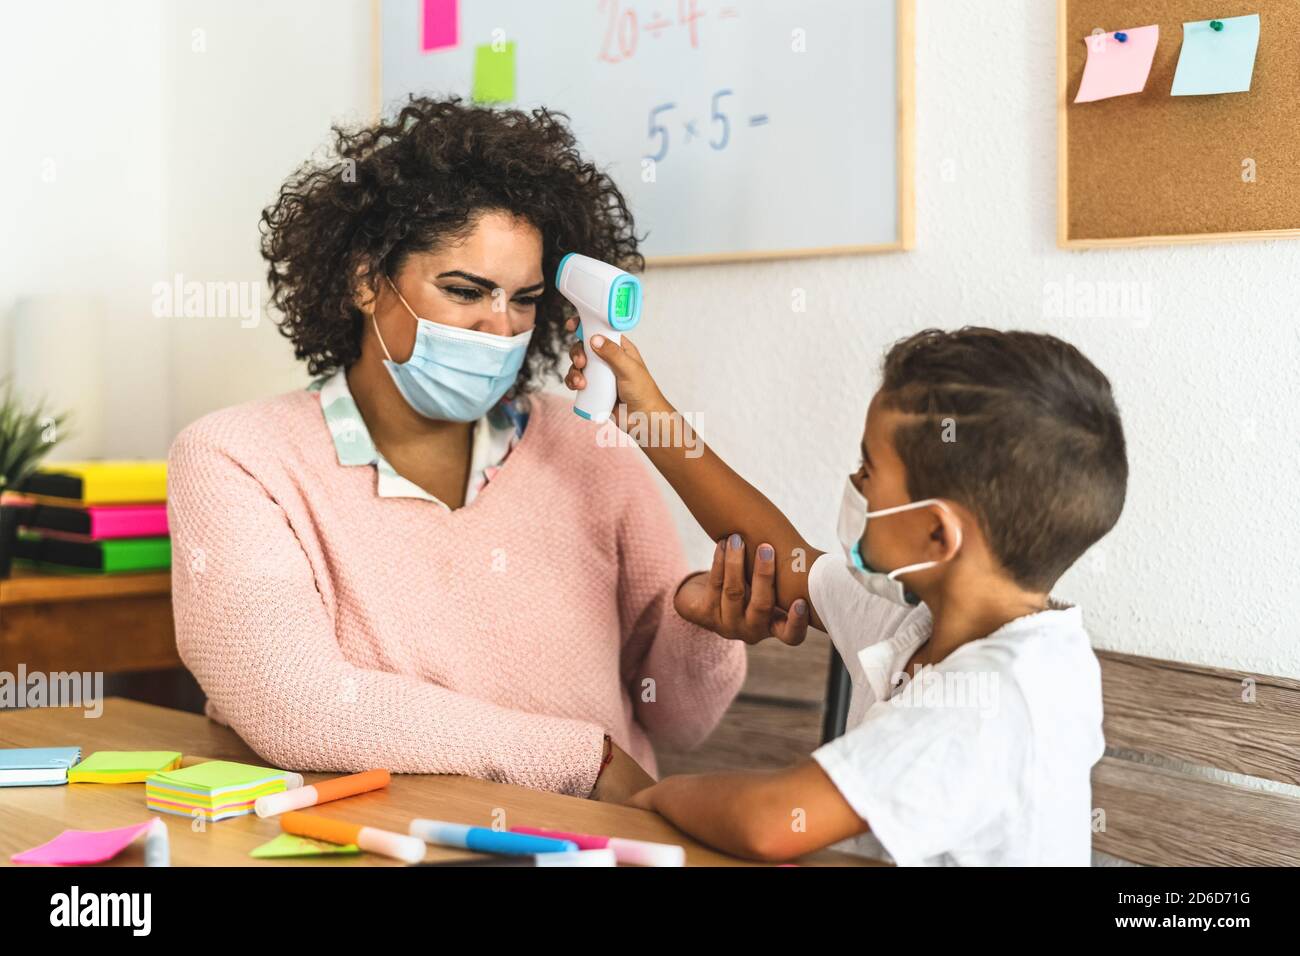 Kinder-Check-up Temperatur auf Lehrer im Klassenzimmer während Corona-Virus Pandemie - Gesundheitsmedizin und Bildungskonzept Stockfoto